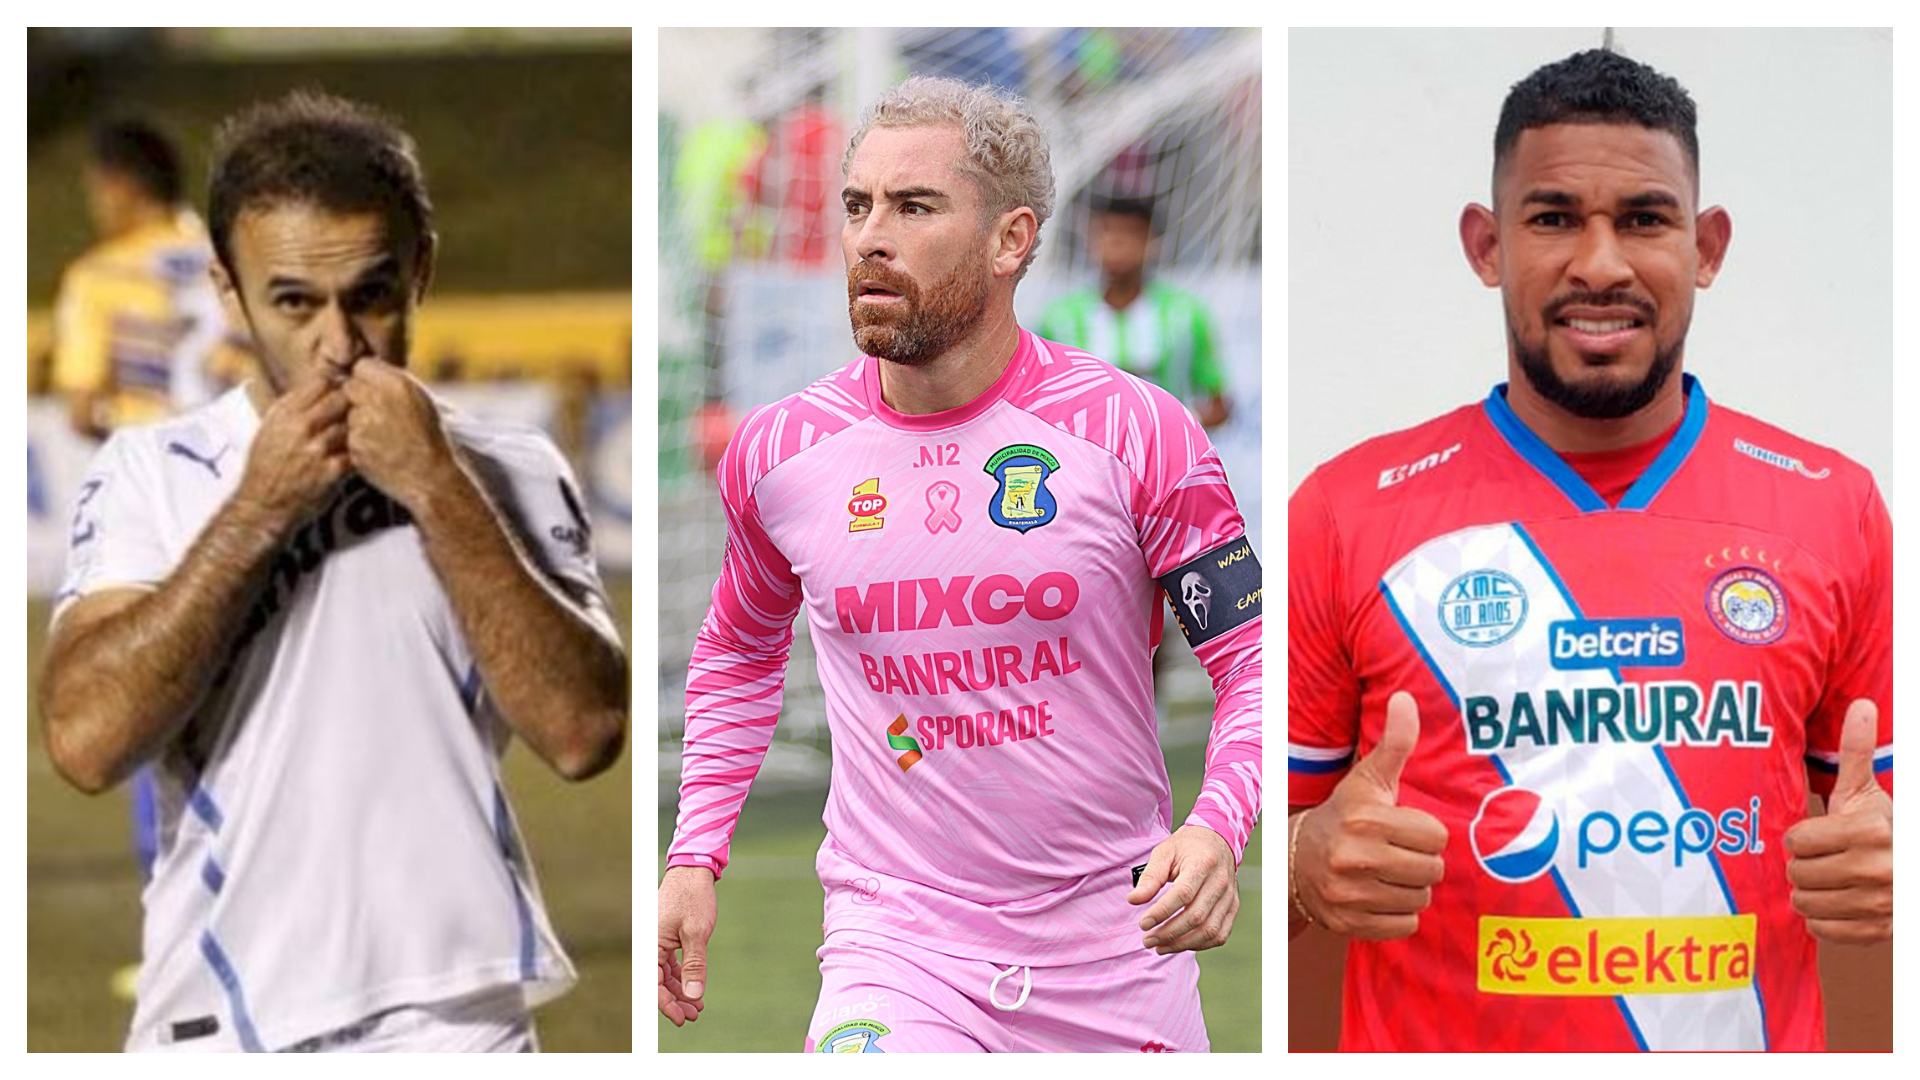 Jugadores renovados en Liga Guate Banrural